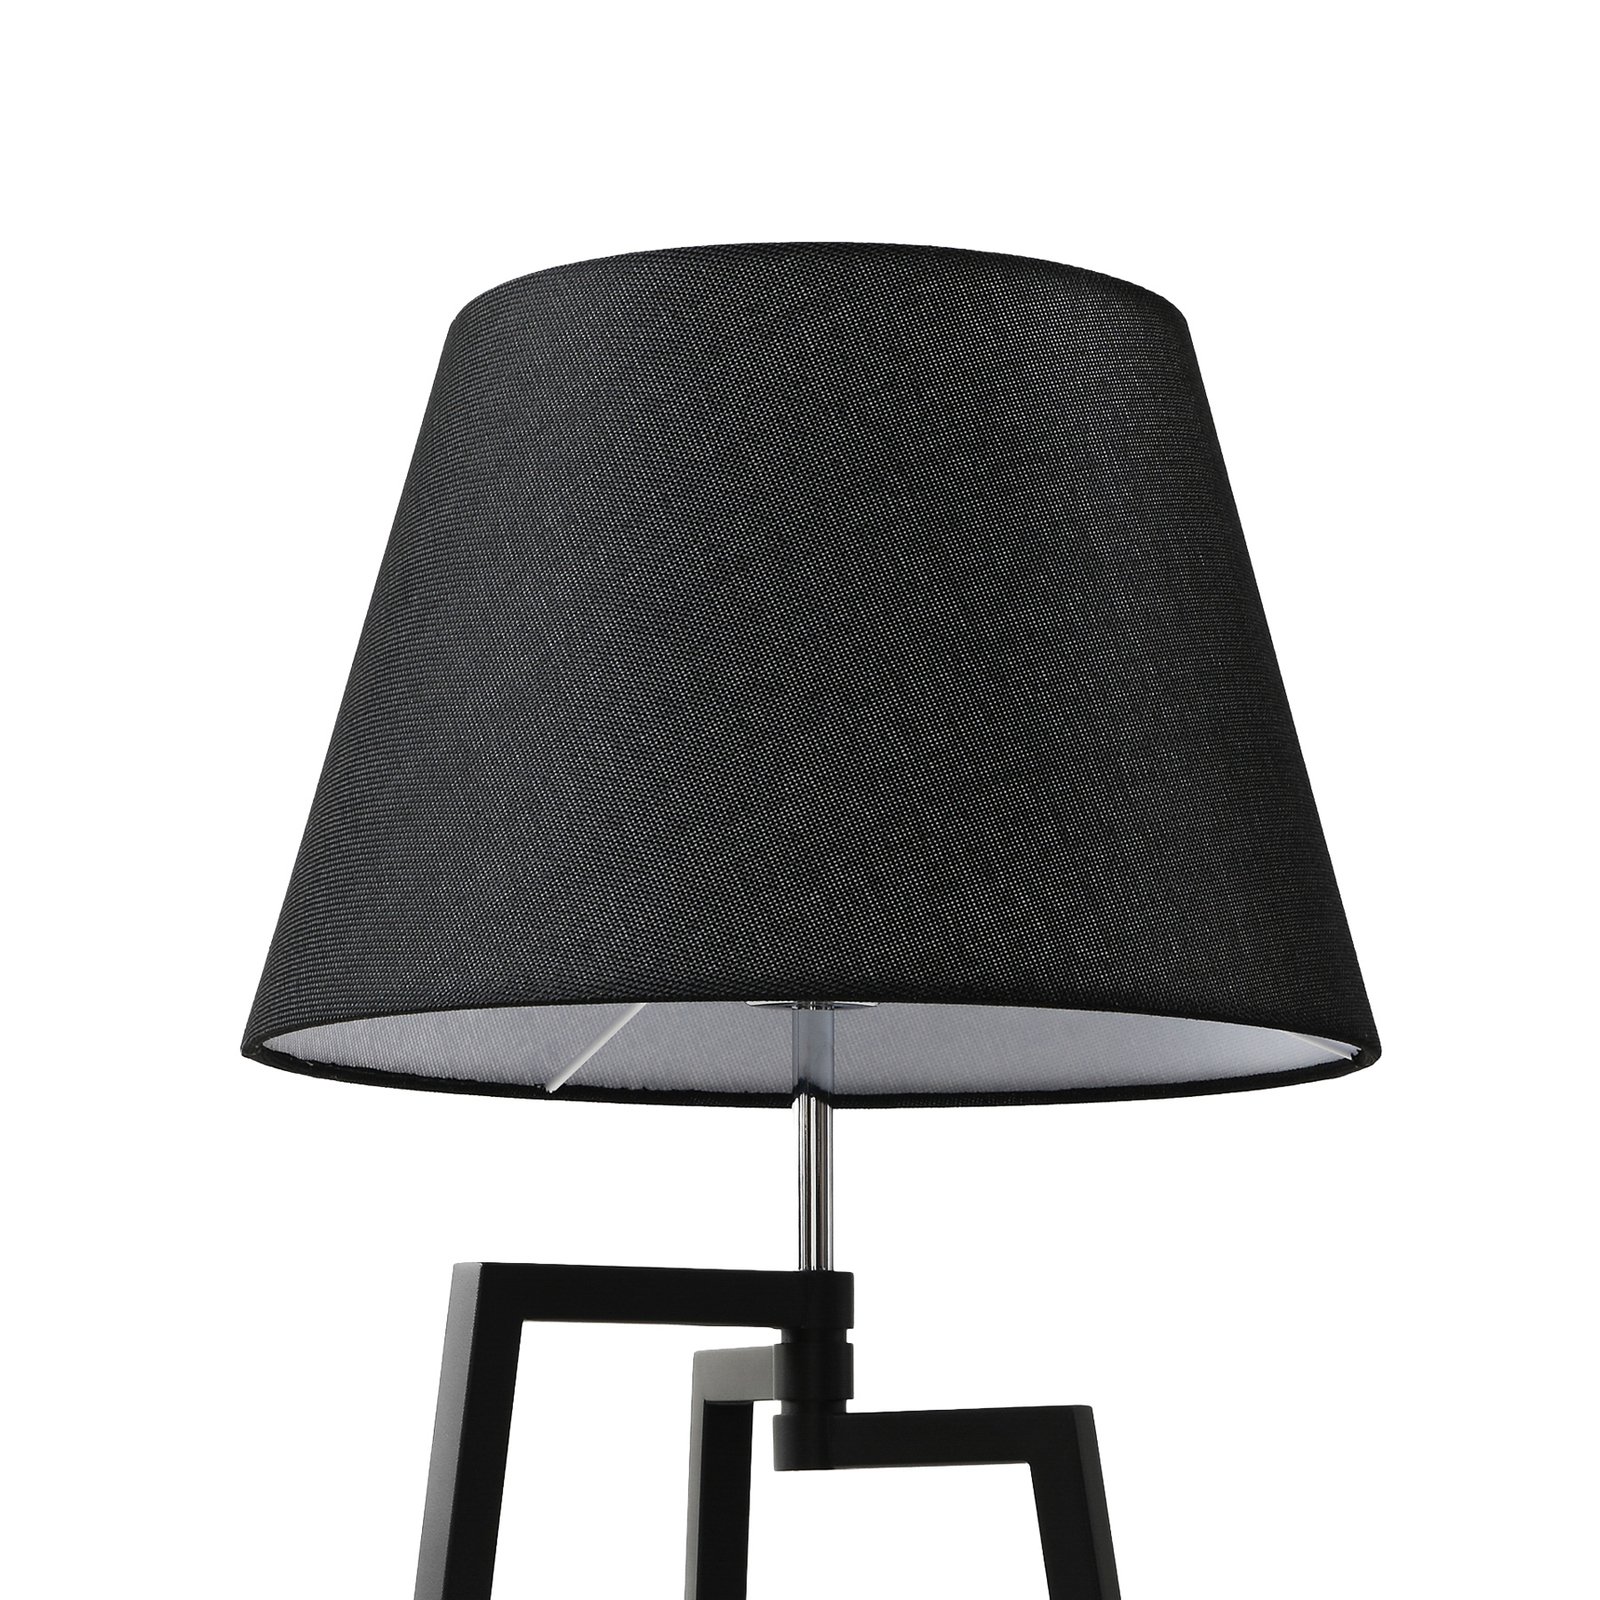 Lucande Amona bordslampa med trefot, svart